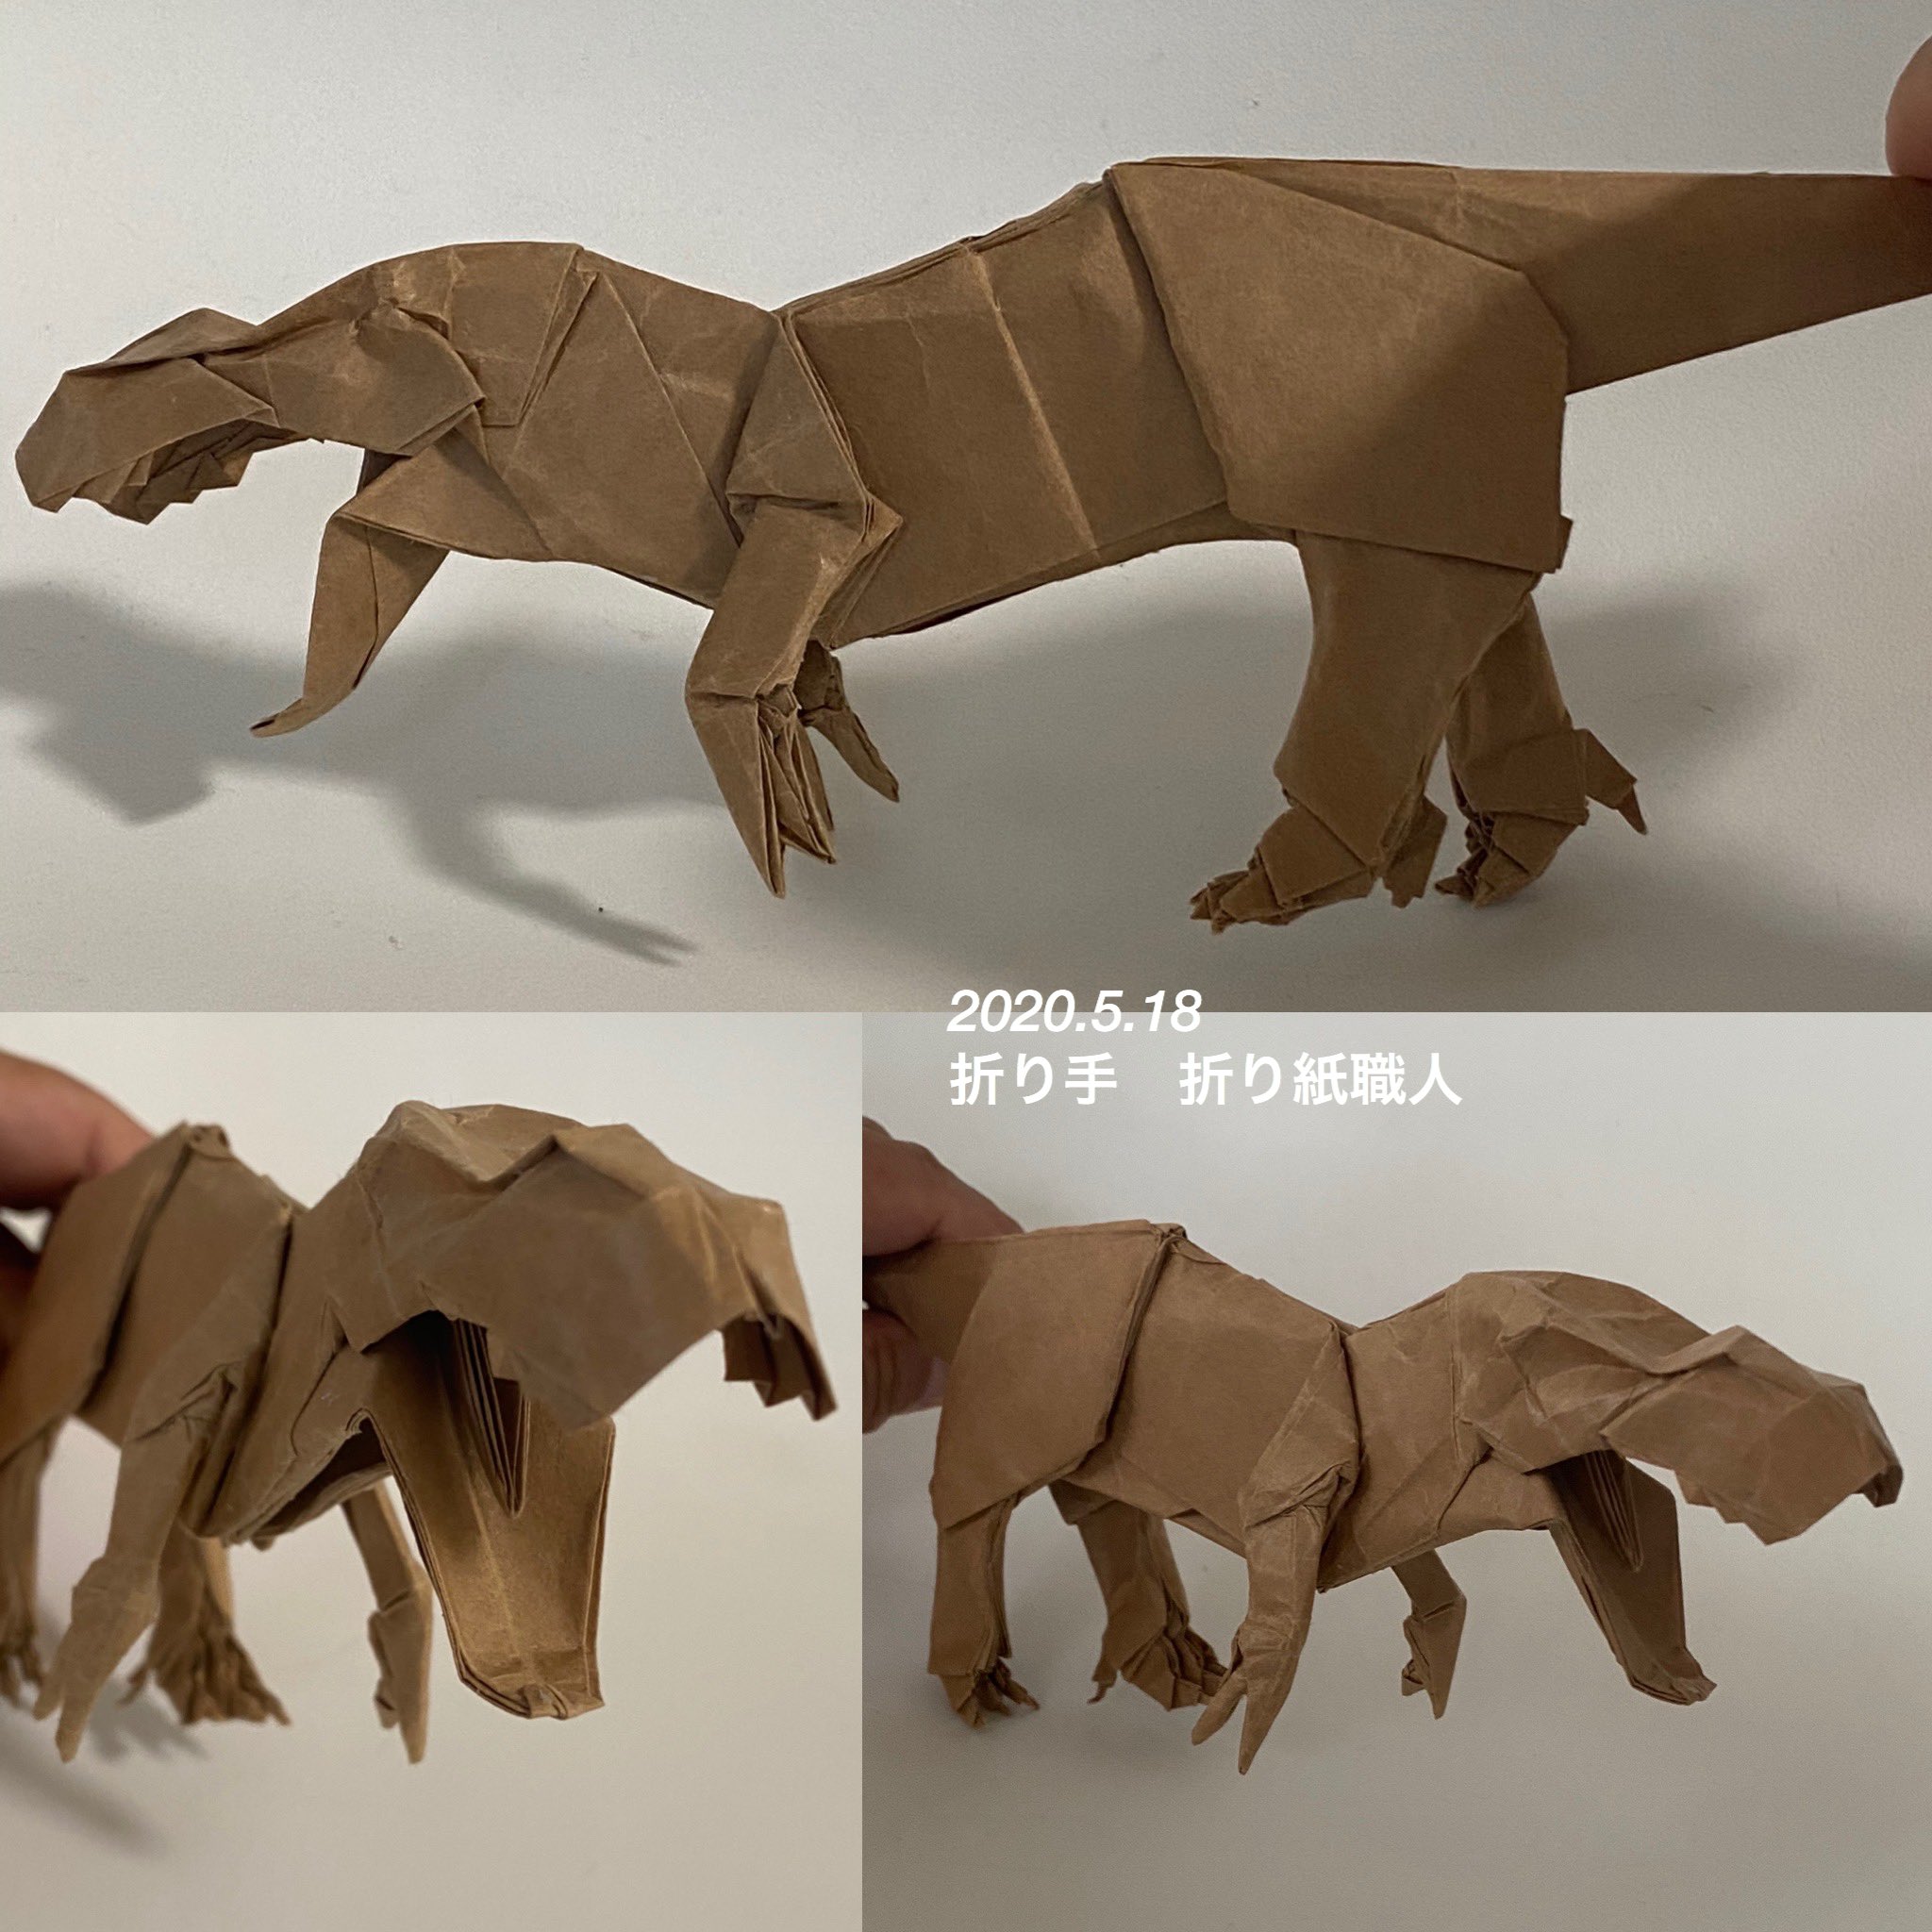 折り紙職人 合谷哲哉 Gotani Tetsuya さんの ティラノサウルス Tyrannosaurus 50x50 Ikeaのクラフト包装紙使用 めちゃくちゃカッコイイです 多分 今まで折ったティラノサウルスの中では一番好きかも 折り紙作品 ティラノサウルス 合谷哲哉